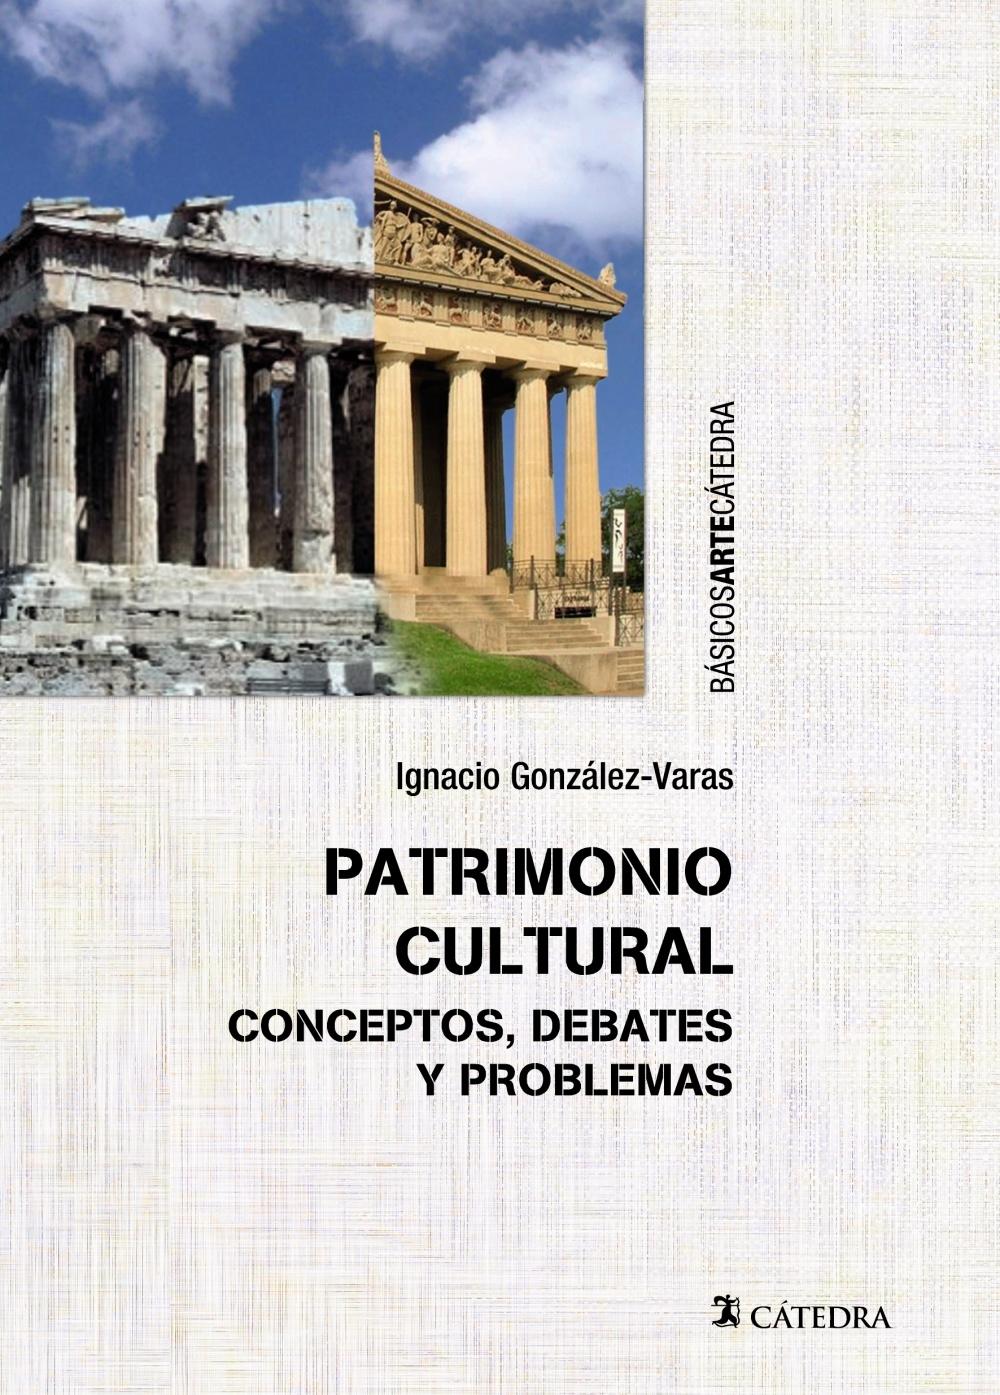 Patrimonio cultural  "Conceptos, debates y problemas". 